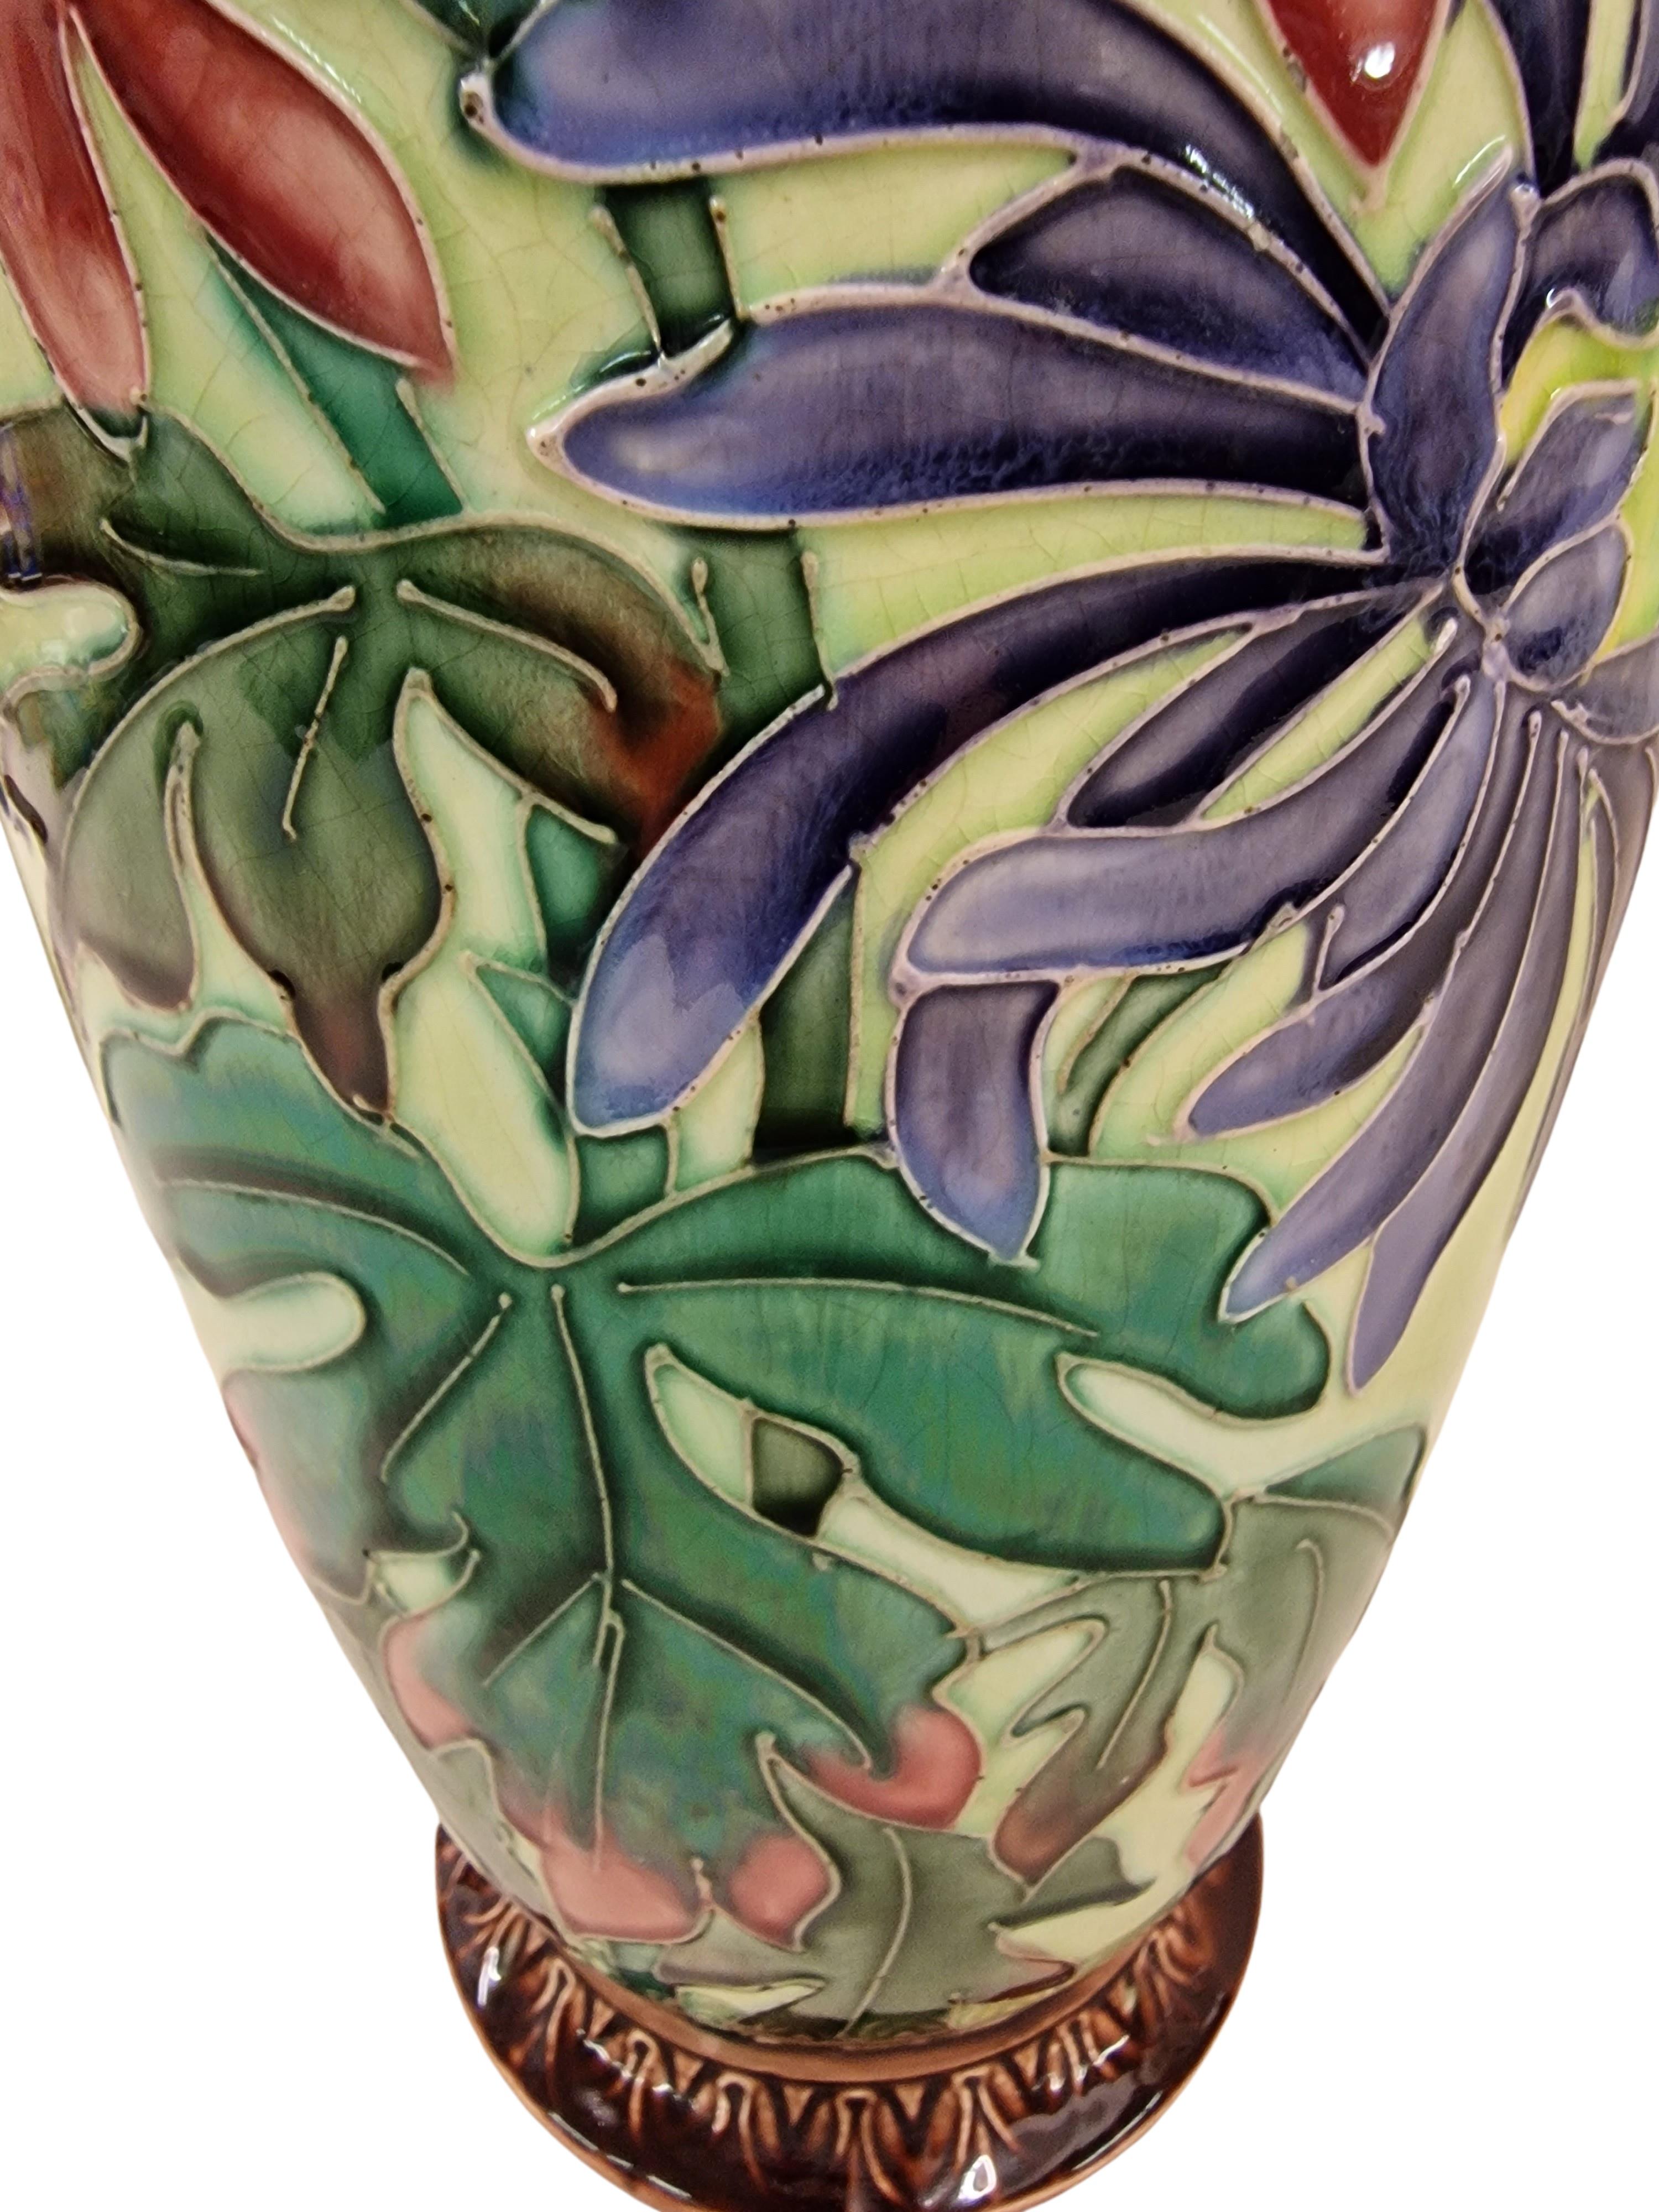 Hand-Crafted Huge Flower Vase, Butterfly Decor, Ceramic, 1910, Jugendstil/Art Nouveau, France